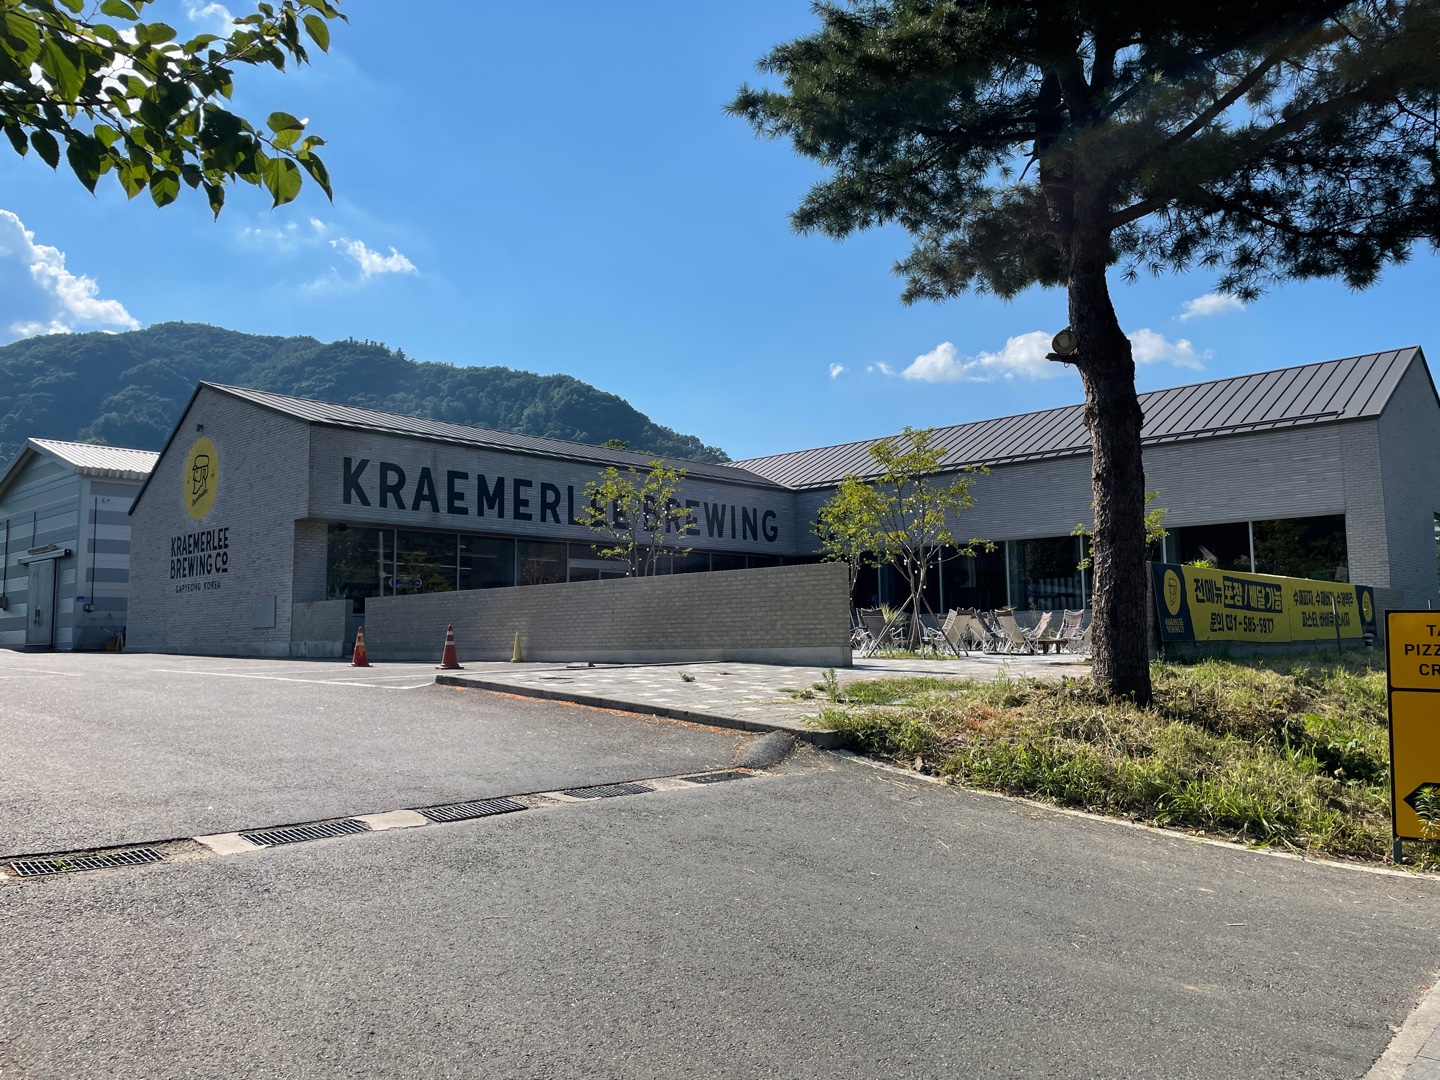 [펍크롤] Kraemerlee Brewery 크래머리 브루어리 - 경기도 가평